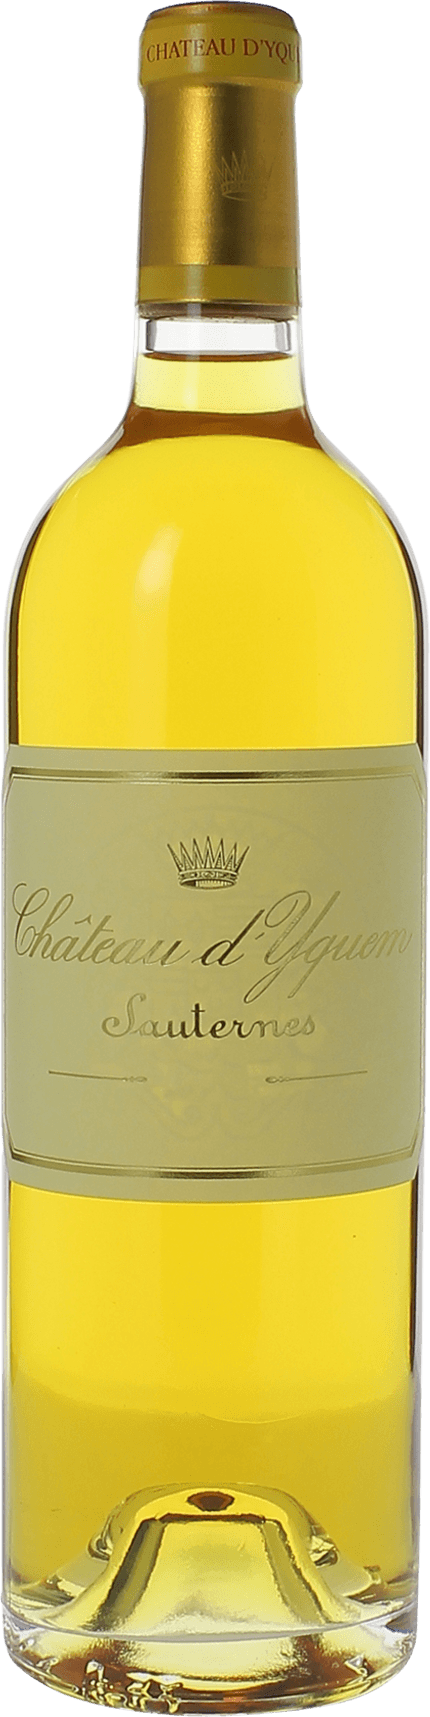 Yquem 1987 1er Grand cru class Sauternes, Bordeaux blanc